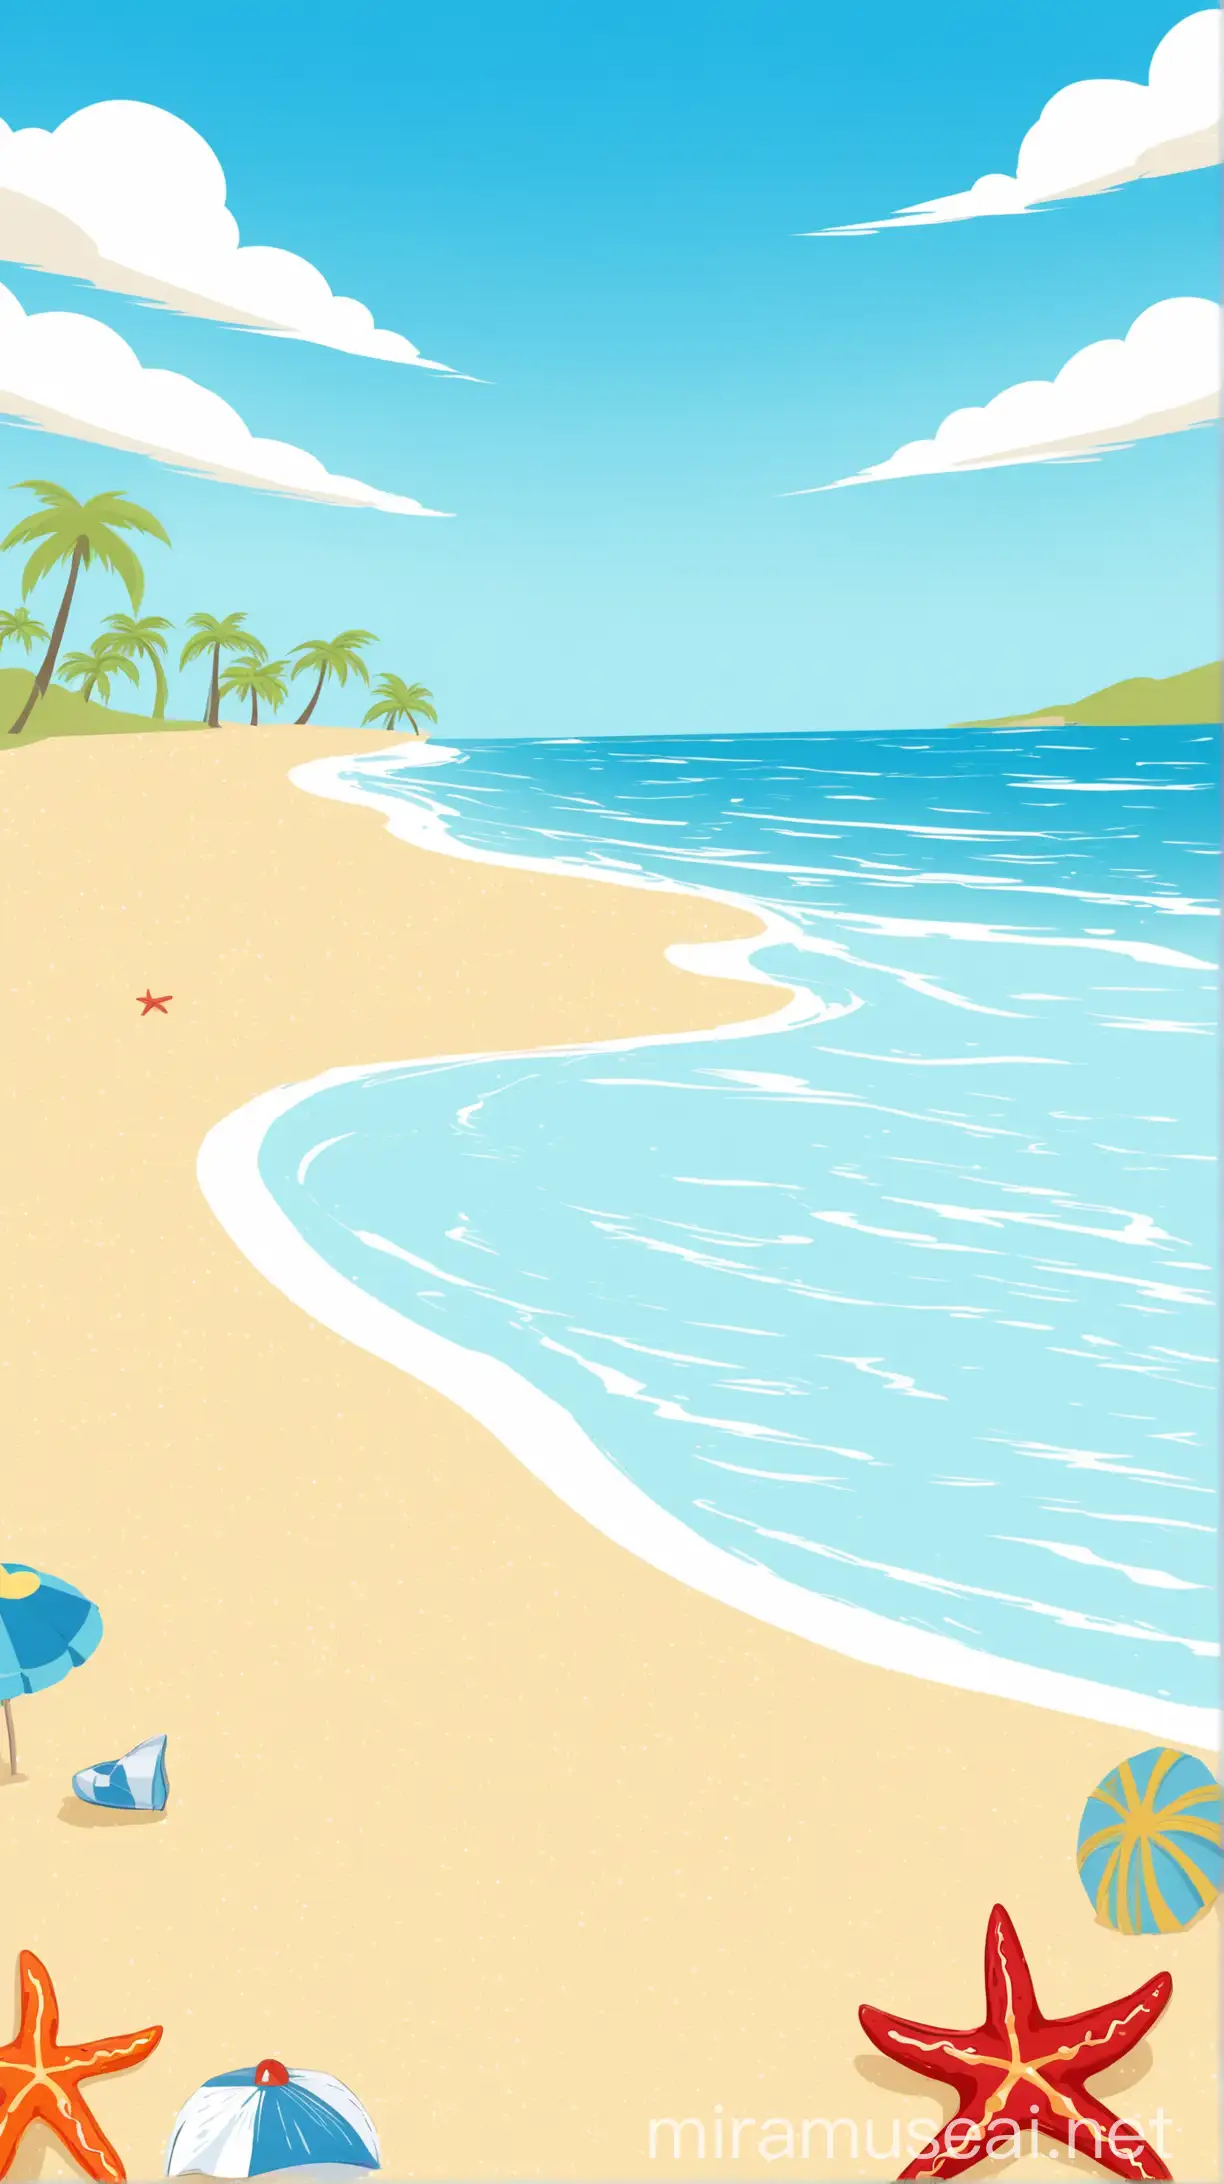 Cartoon Beach Scene with Blue Sky